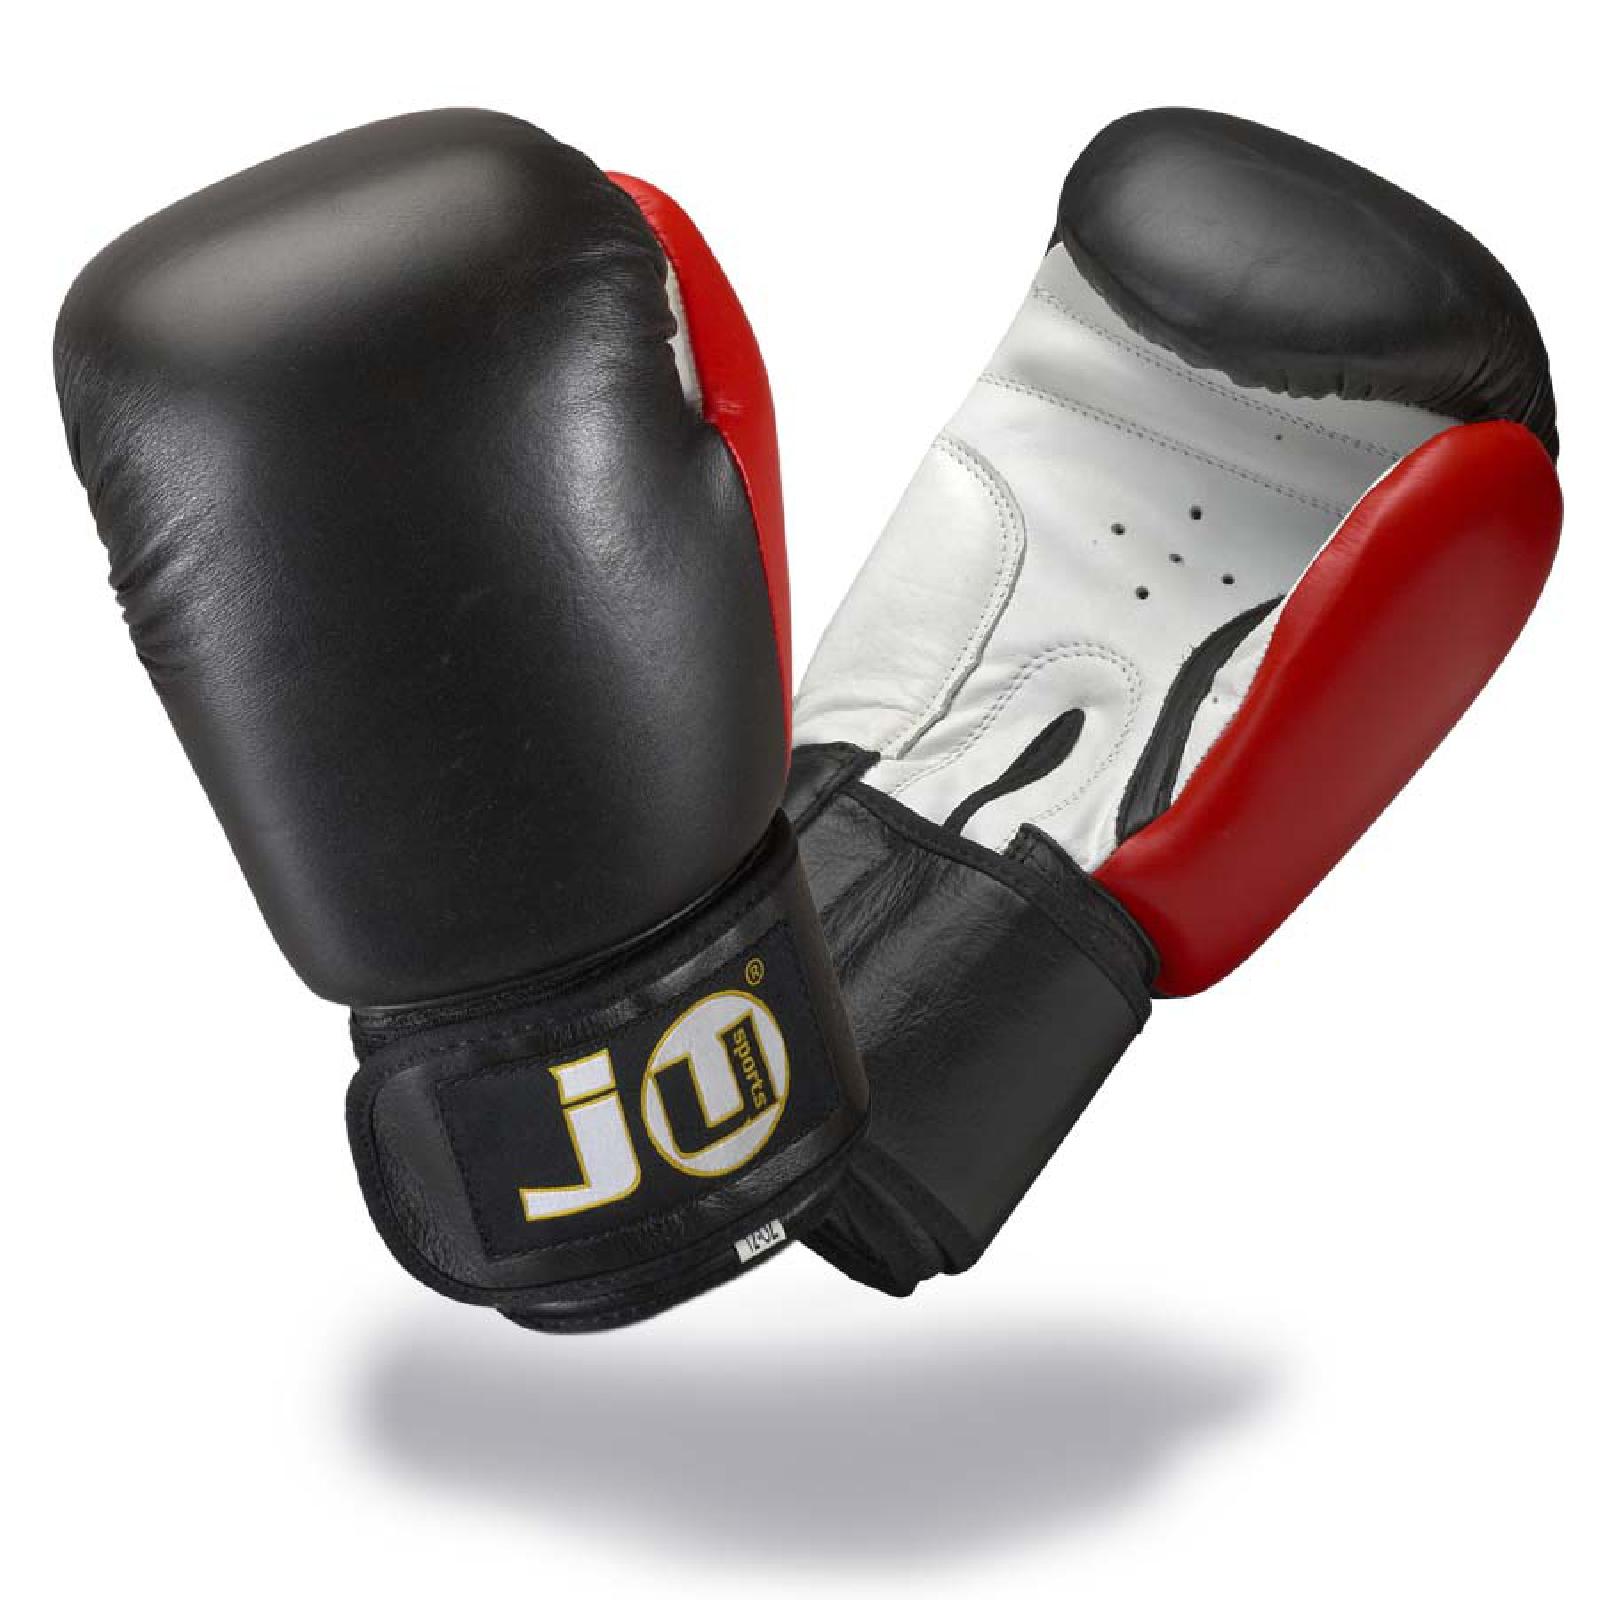 Ju-Sports plus Leder | KAMPFHELDEN Boxhandschuhe